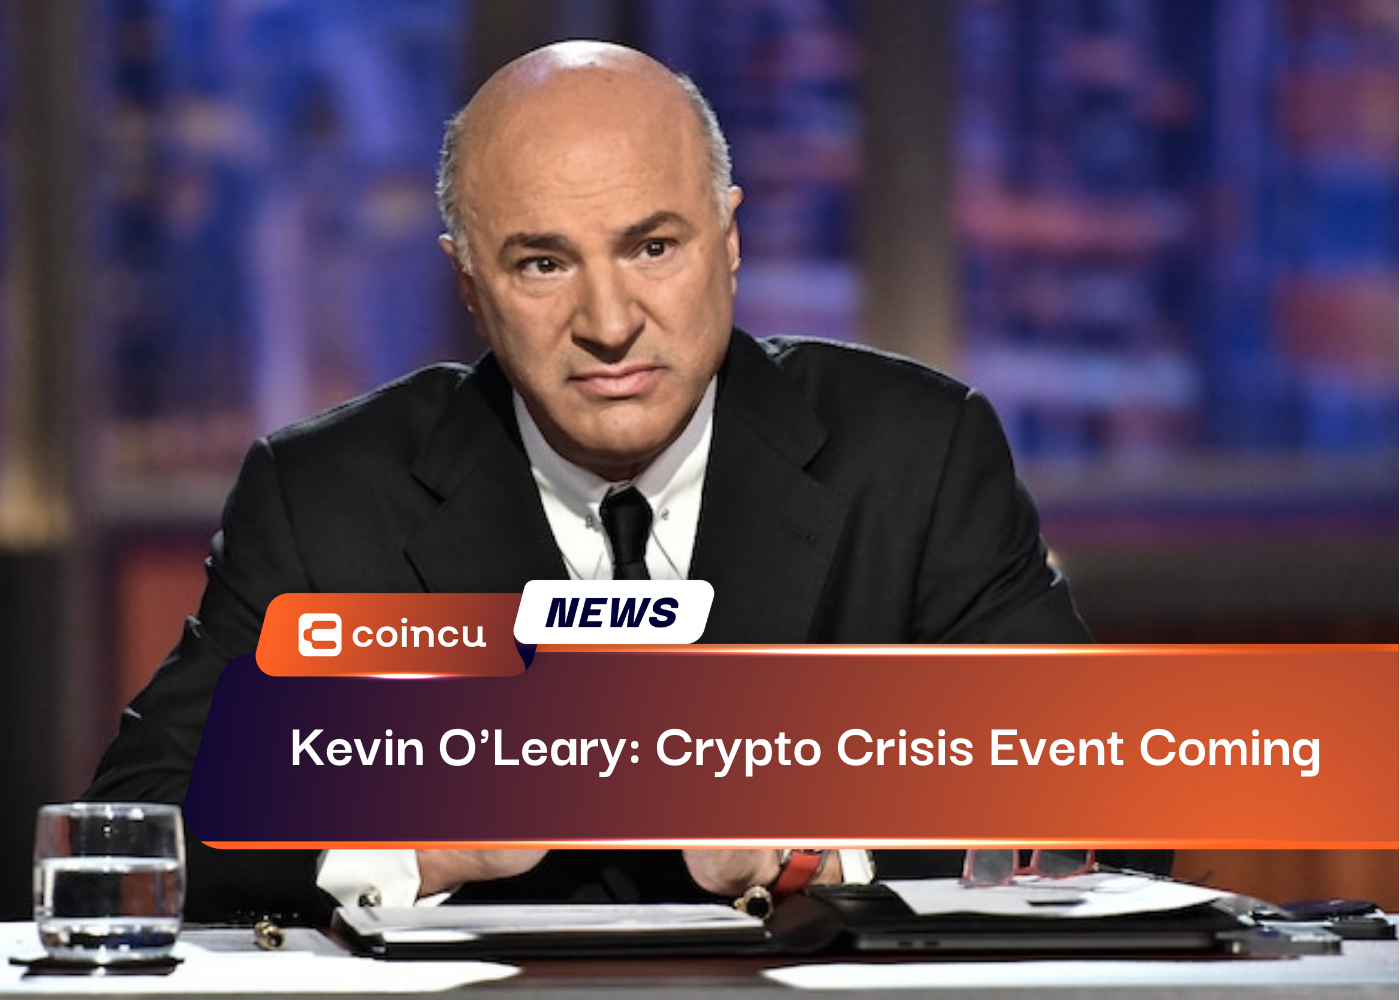 Kevin O'Leary: Se acerca un evento de crisis criptográfica